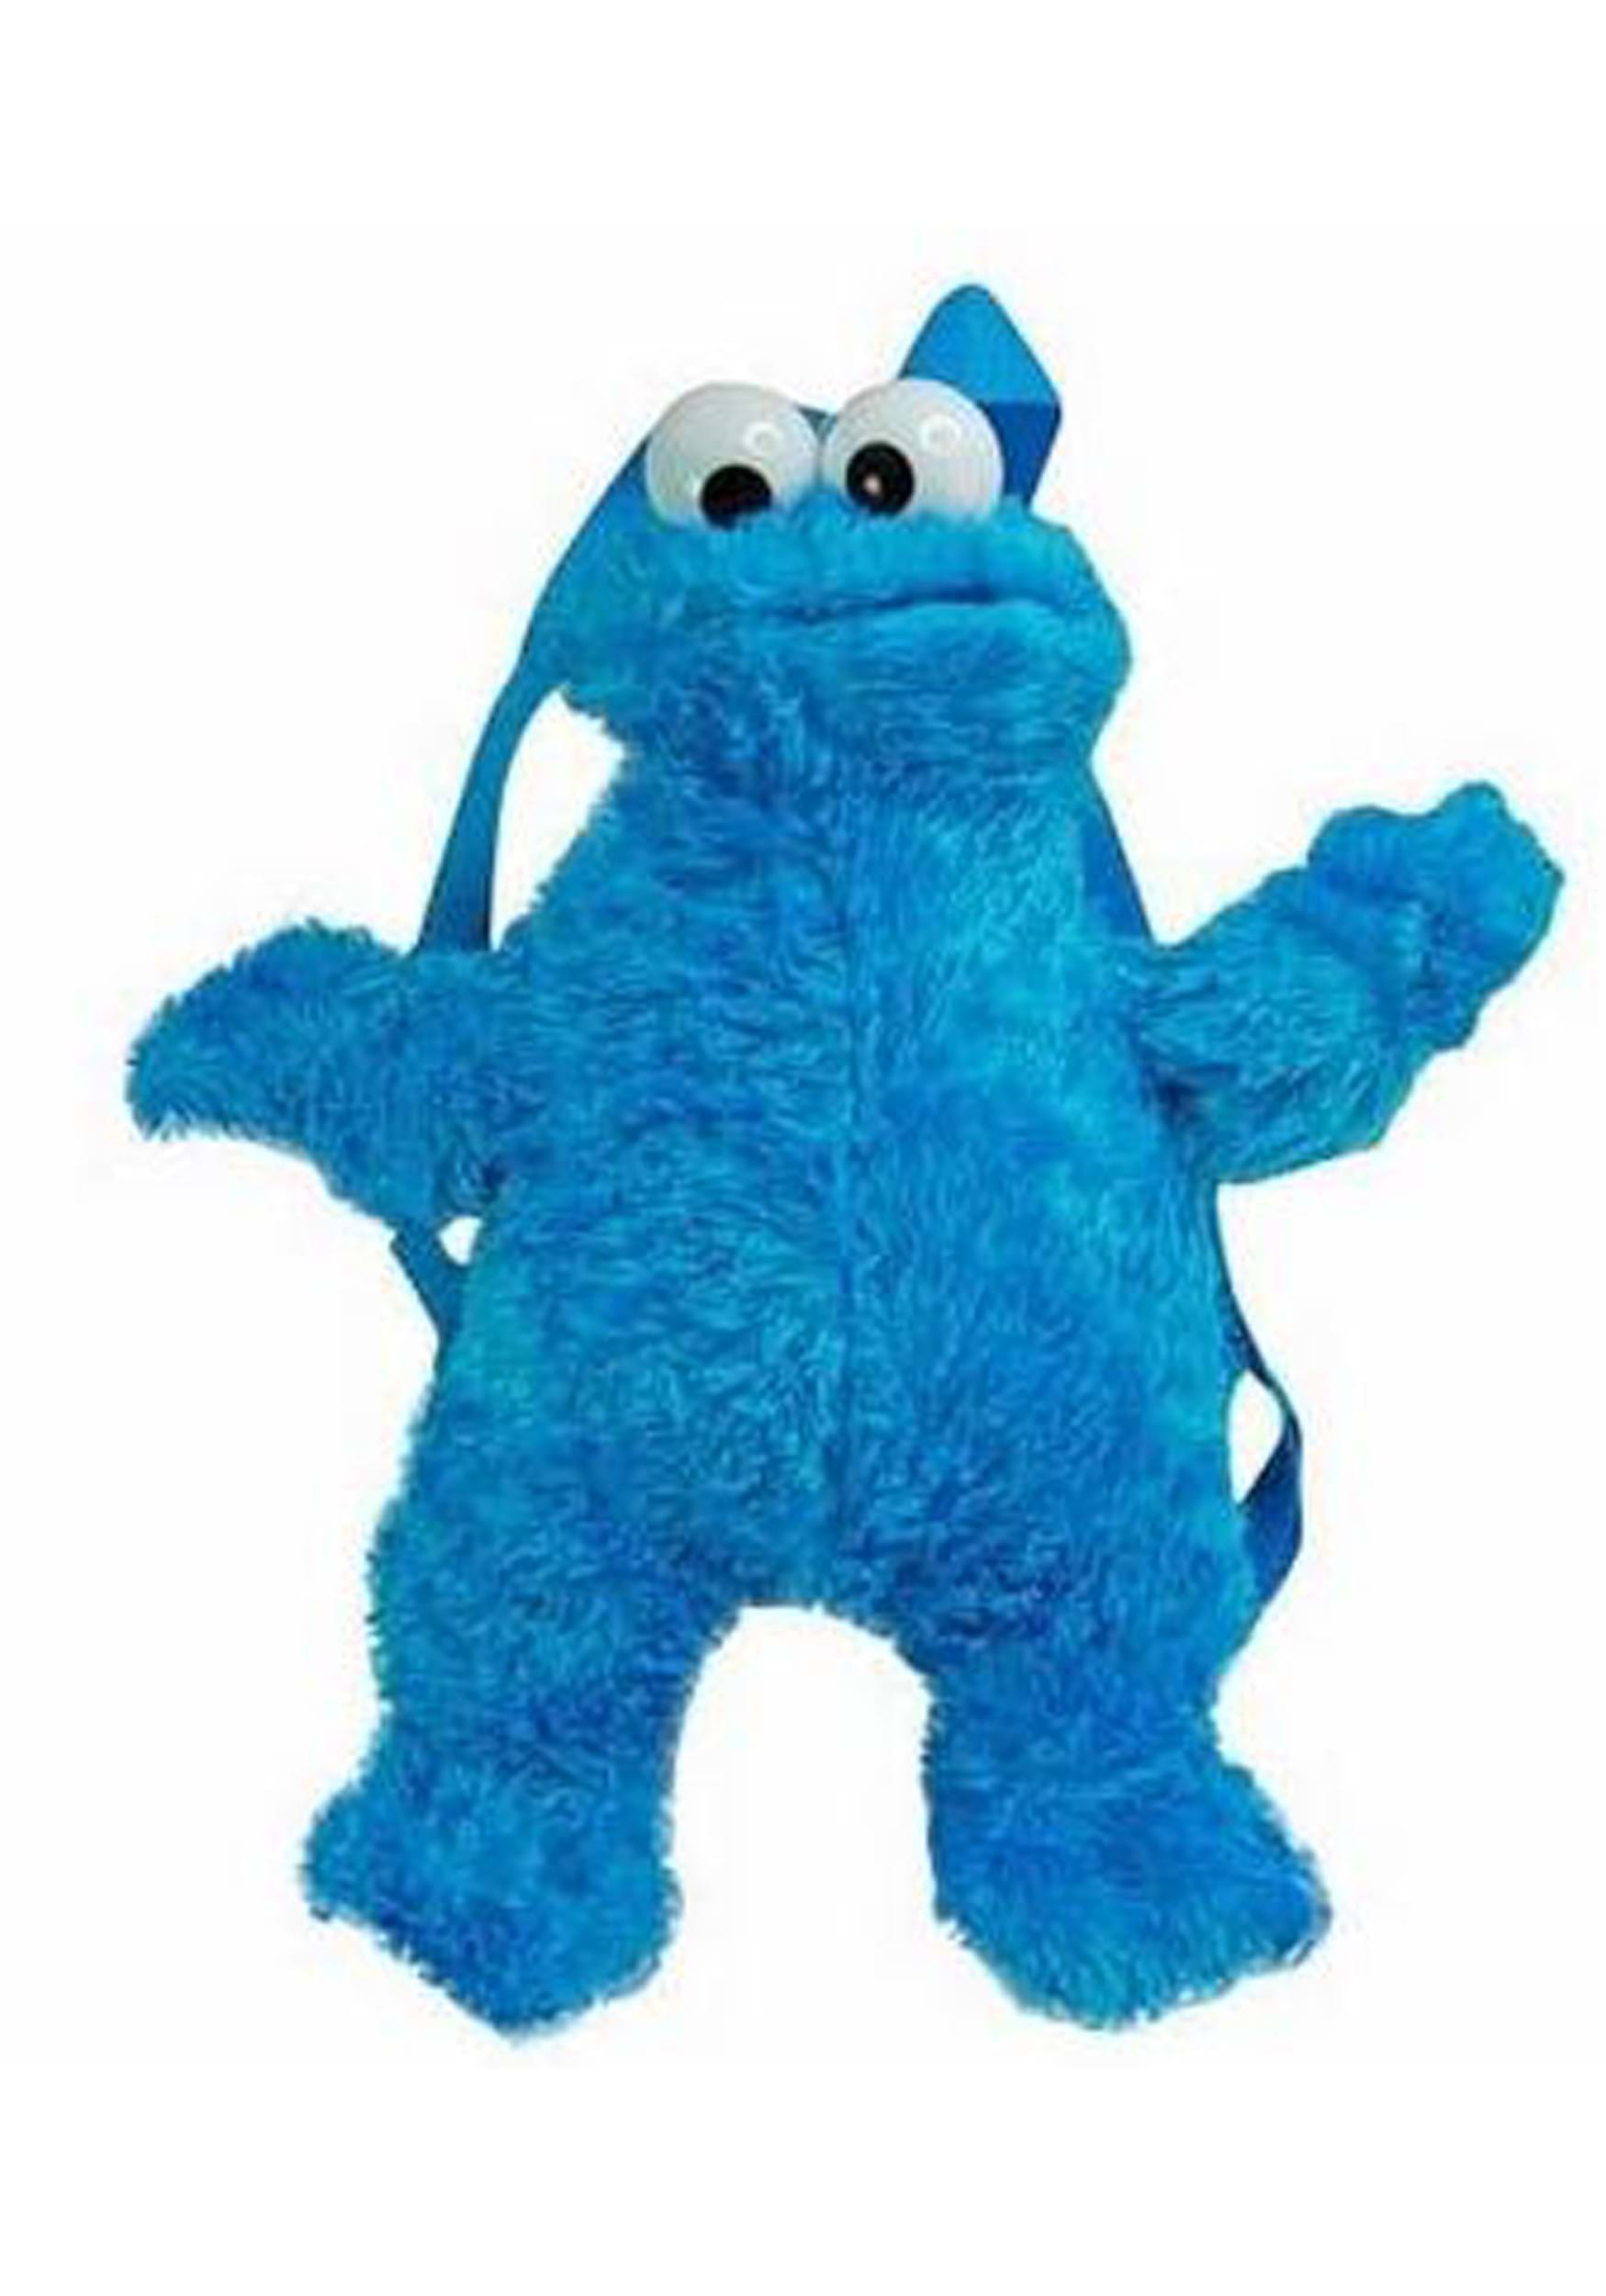 16 Cookie Monster Plush Backpack | Sesame Street Backpacks